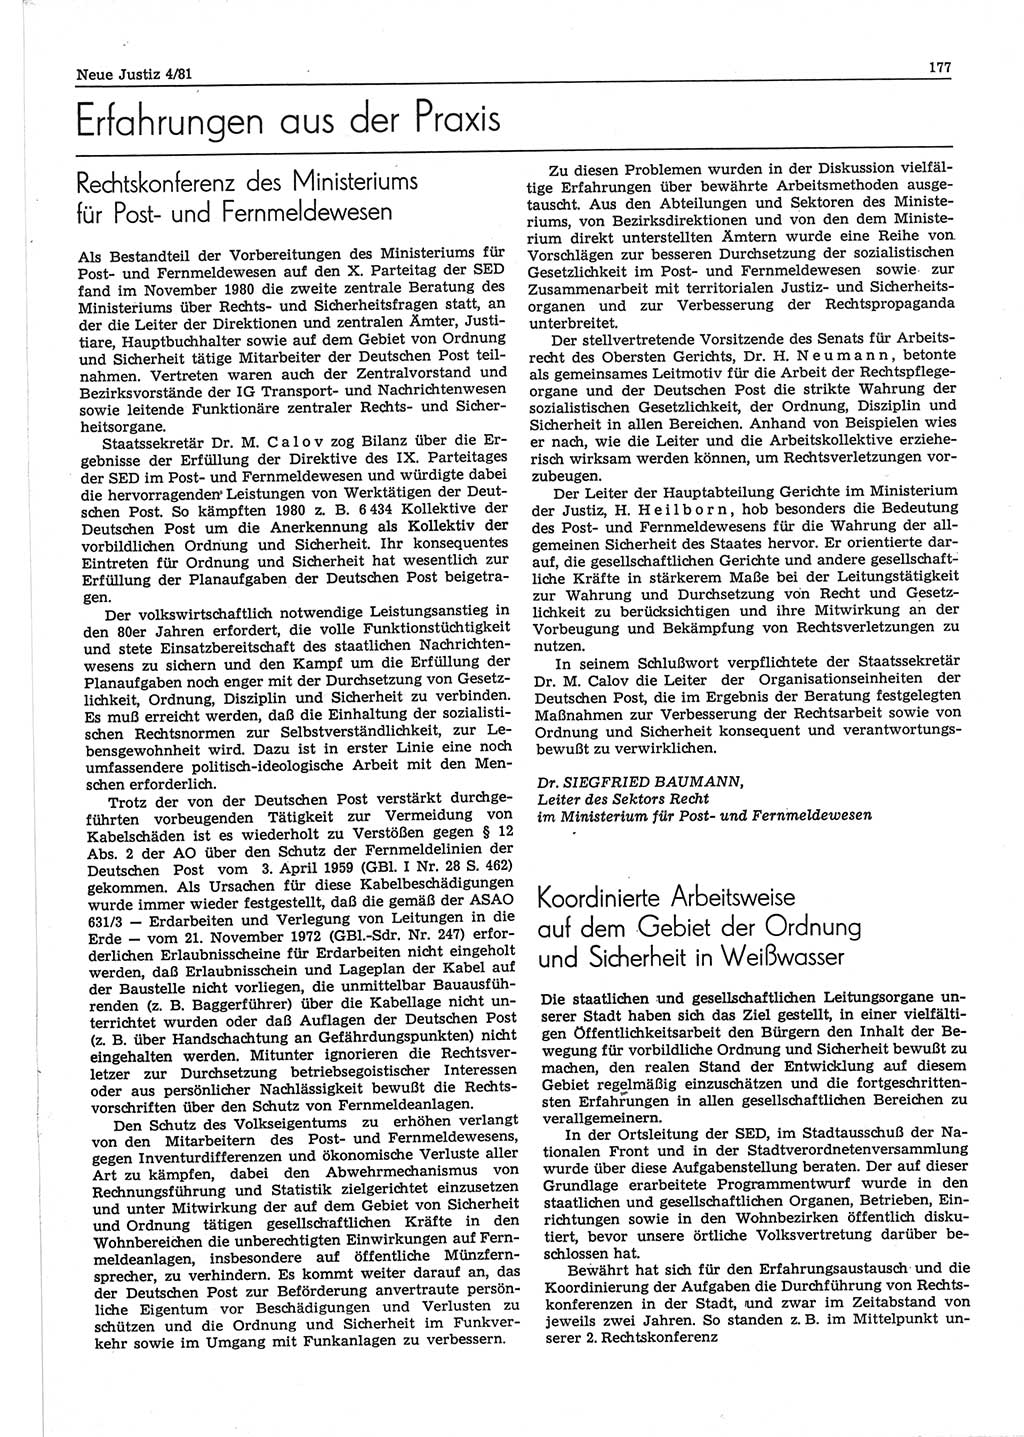 Neue Justiz (NJ), Zeitschrift für sozialistisches Recht und Gesetzlichkeit [Deutsche Demokratische Republik (DDR)], 35. Jahrgang 1981, Seite 177 (NJ DDR 1981, S. 177)